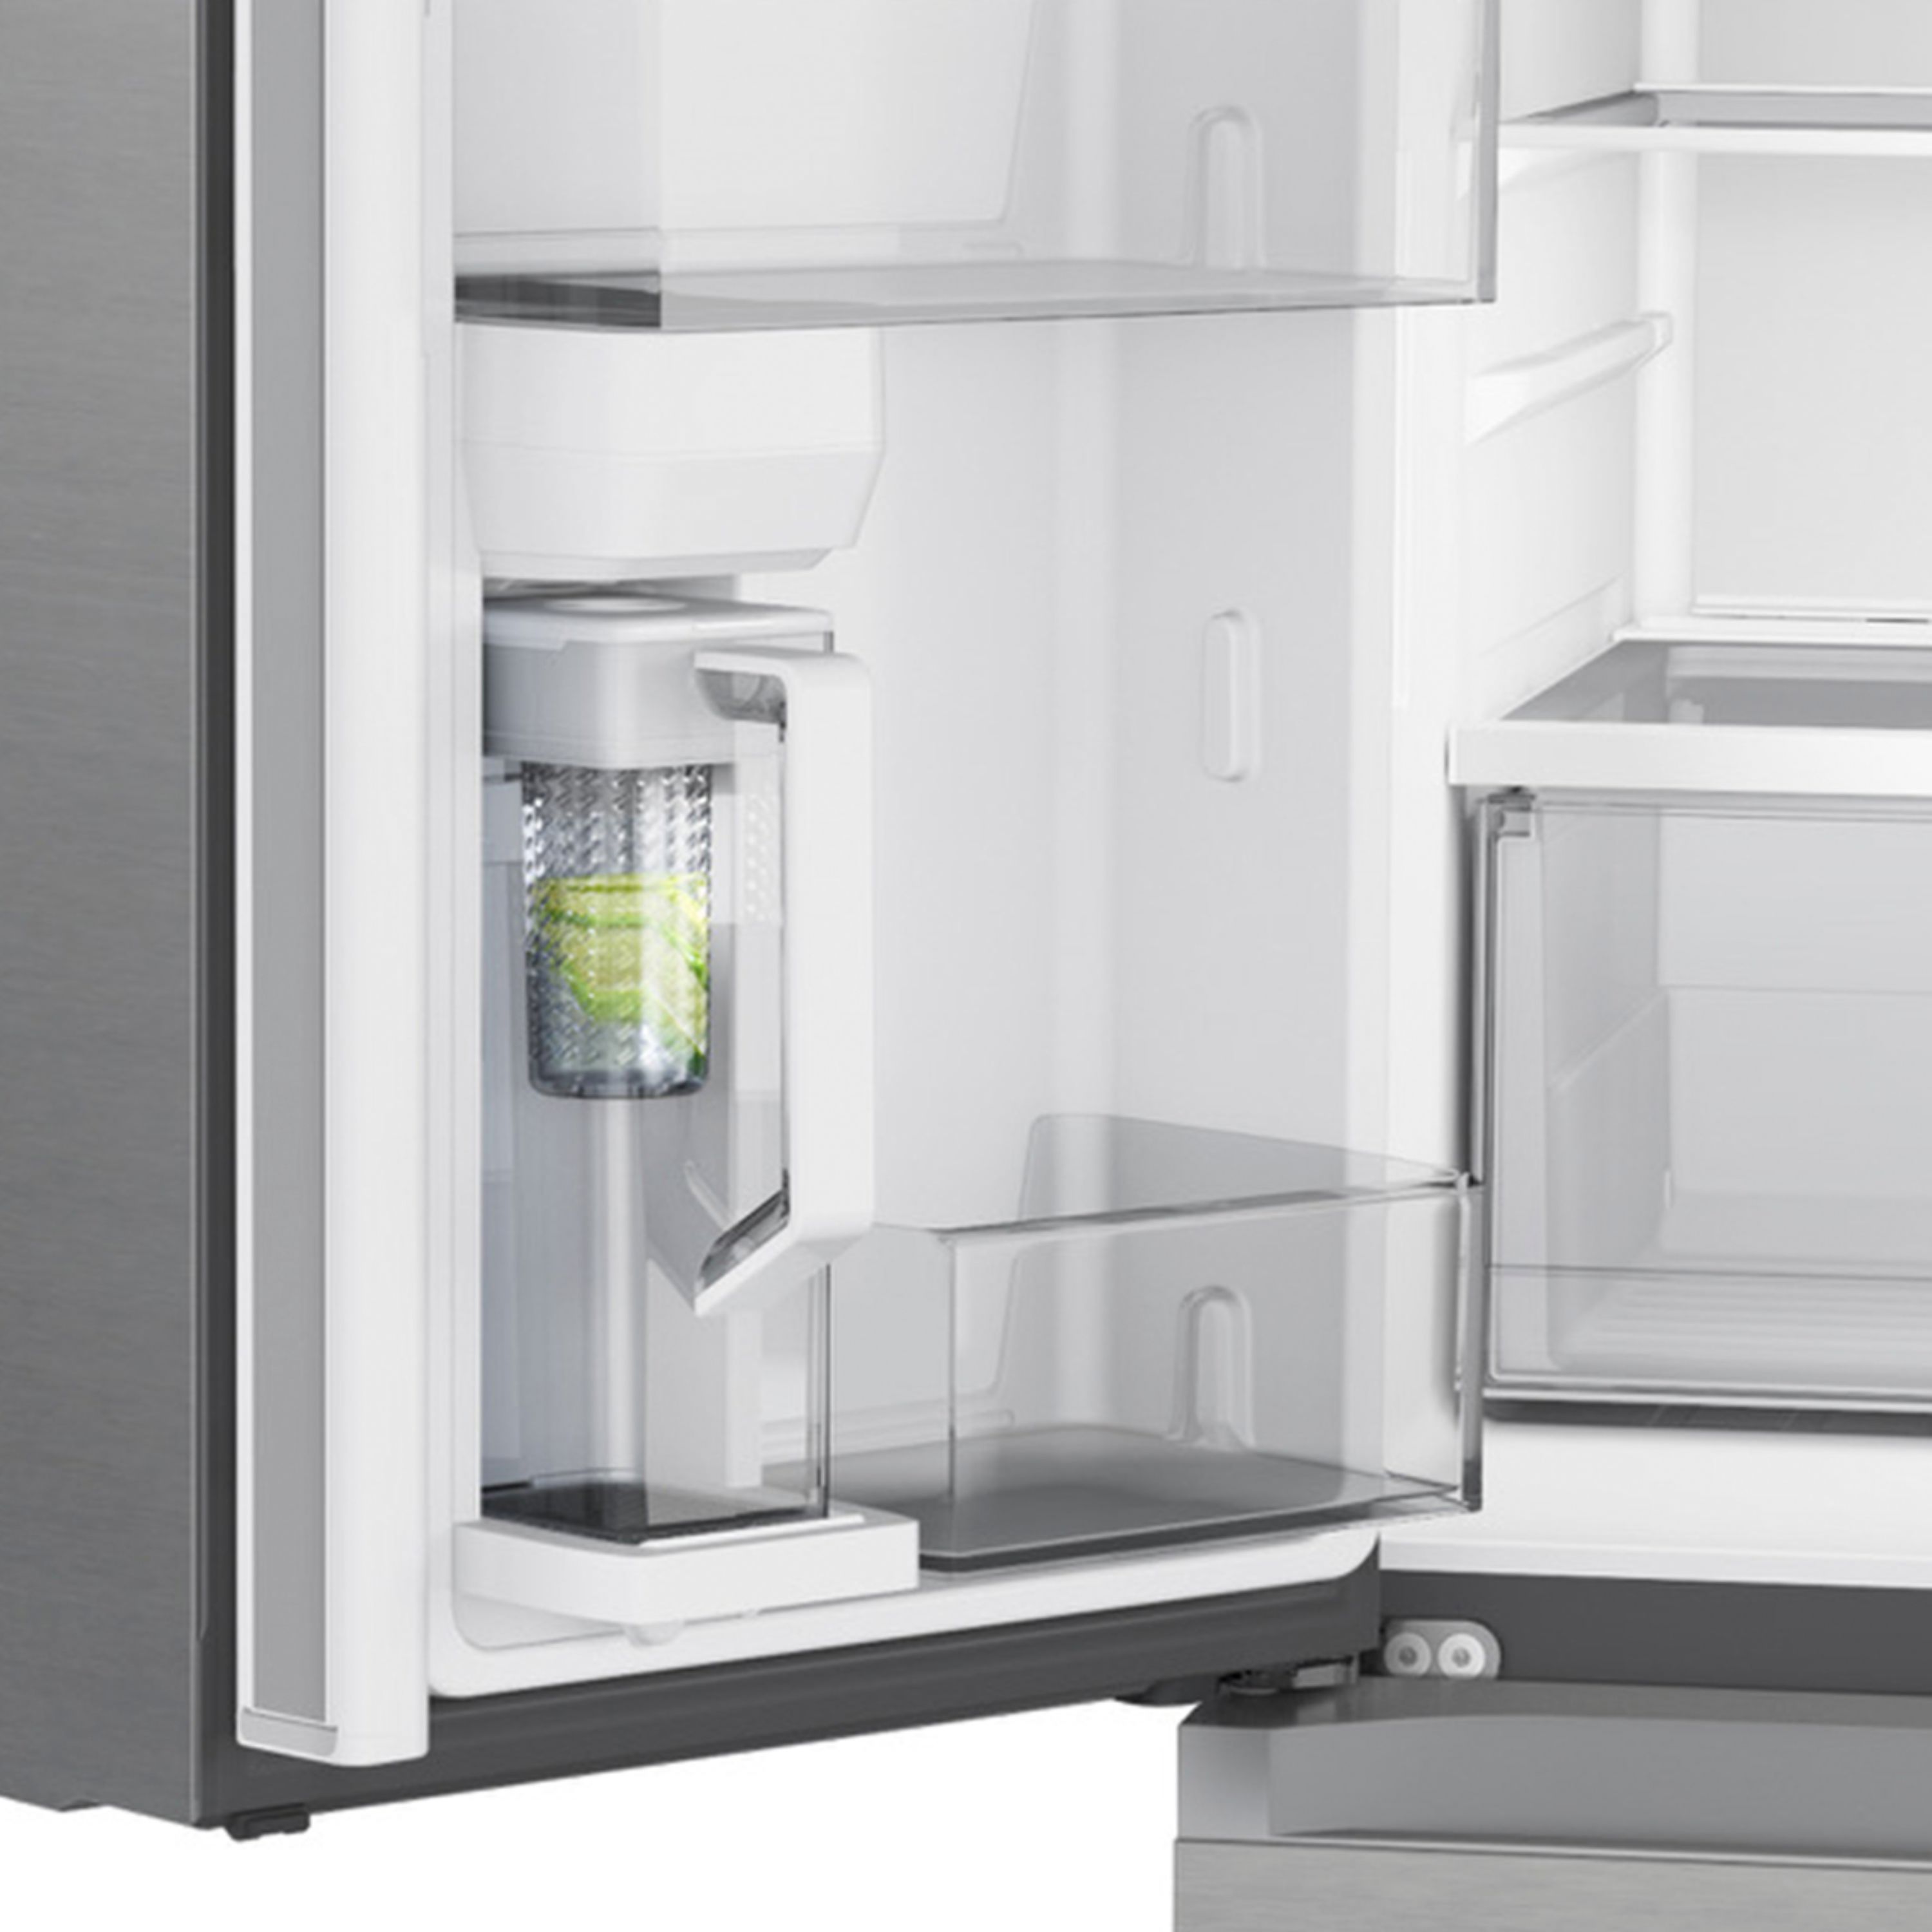 Samsung 23 cu. ft. 4-Door Flex™ French Door Refrigerator with WiFi ...